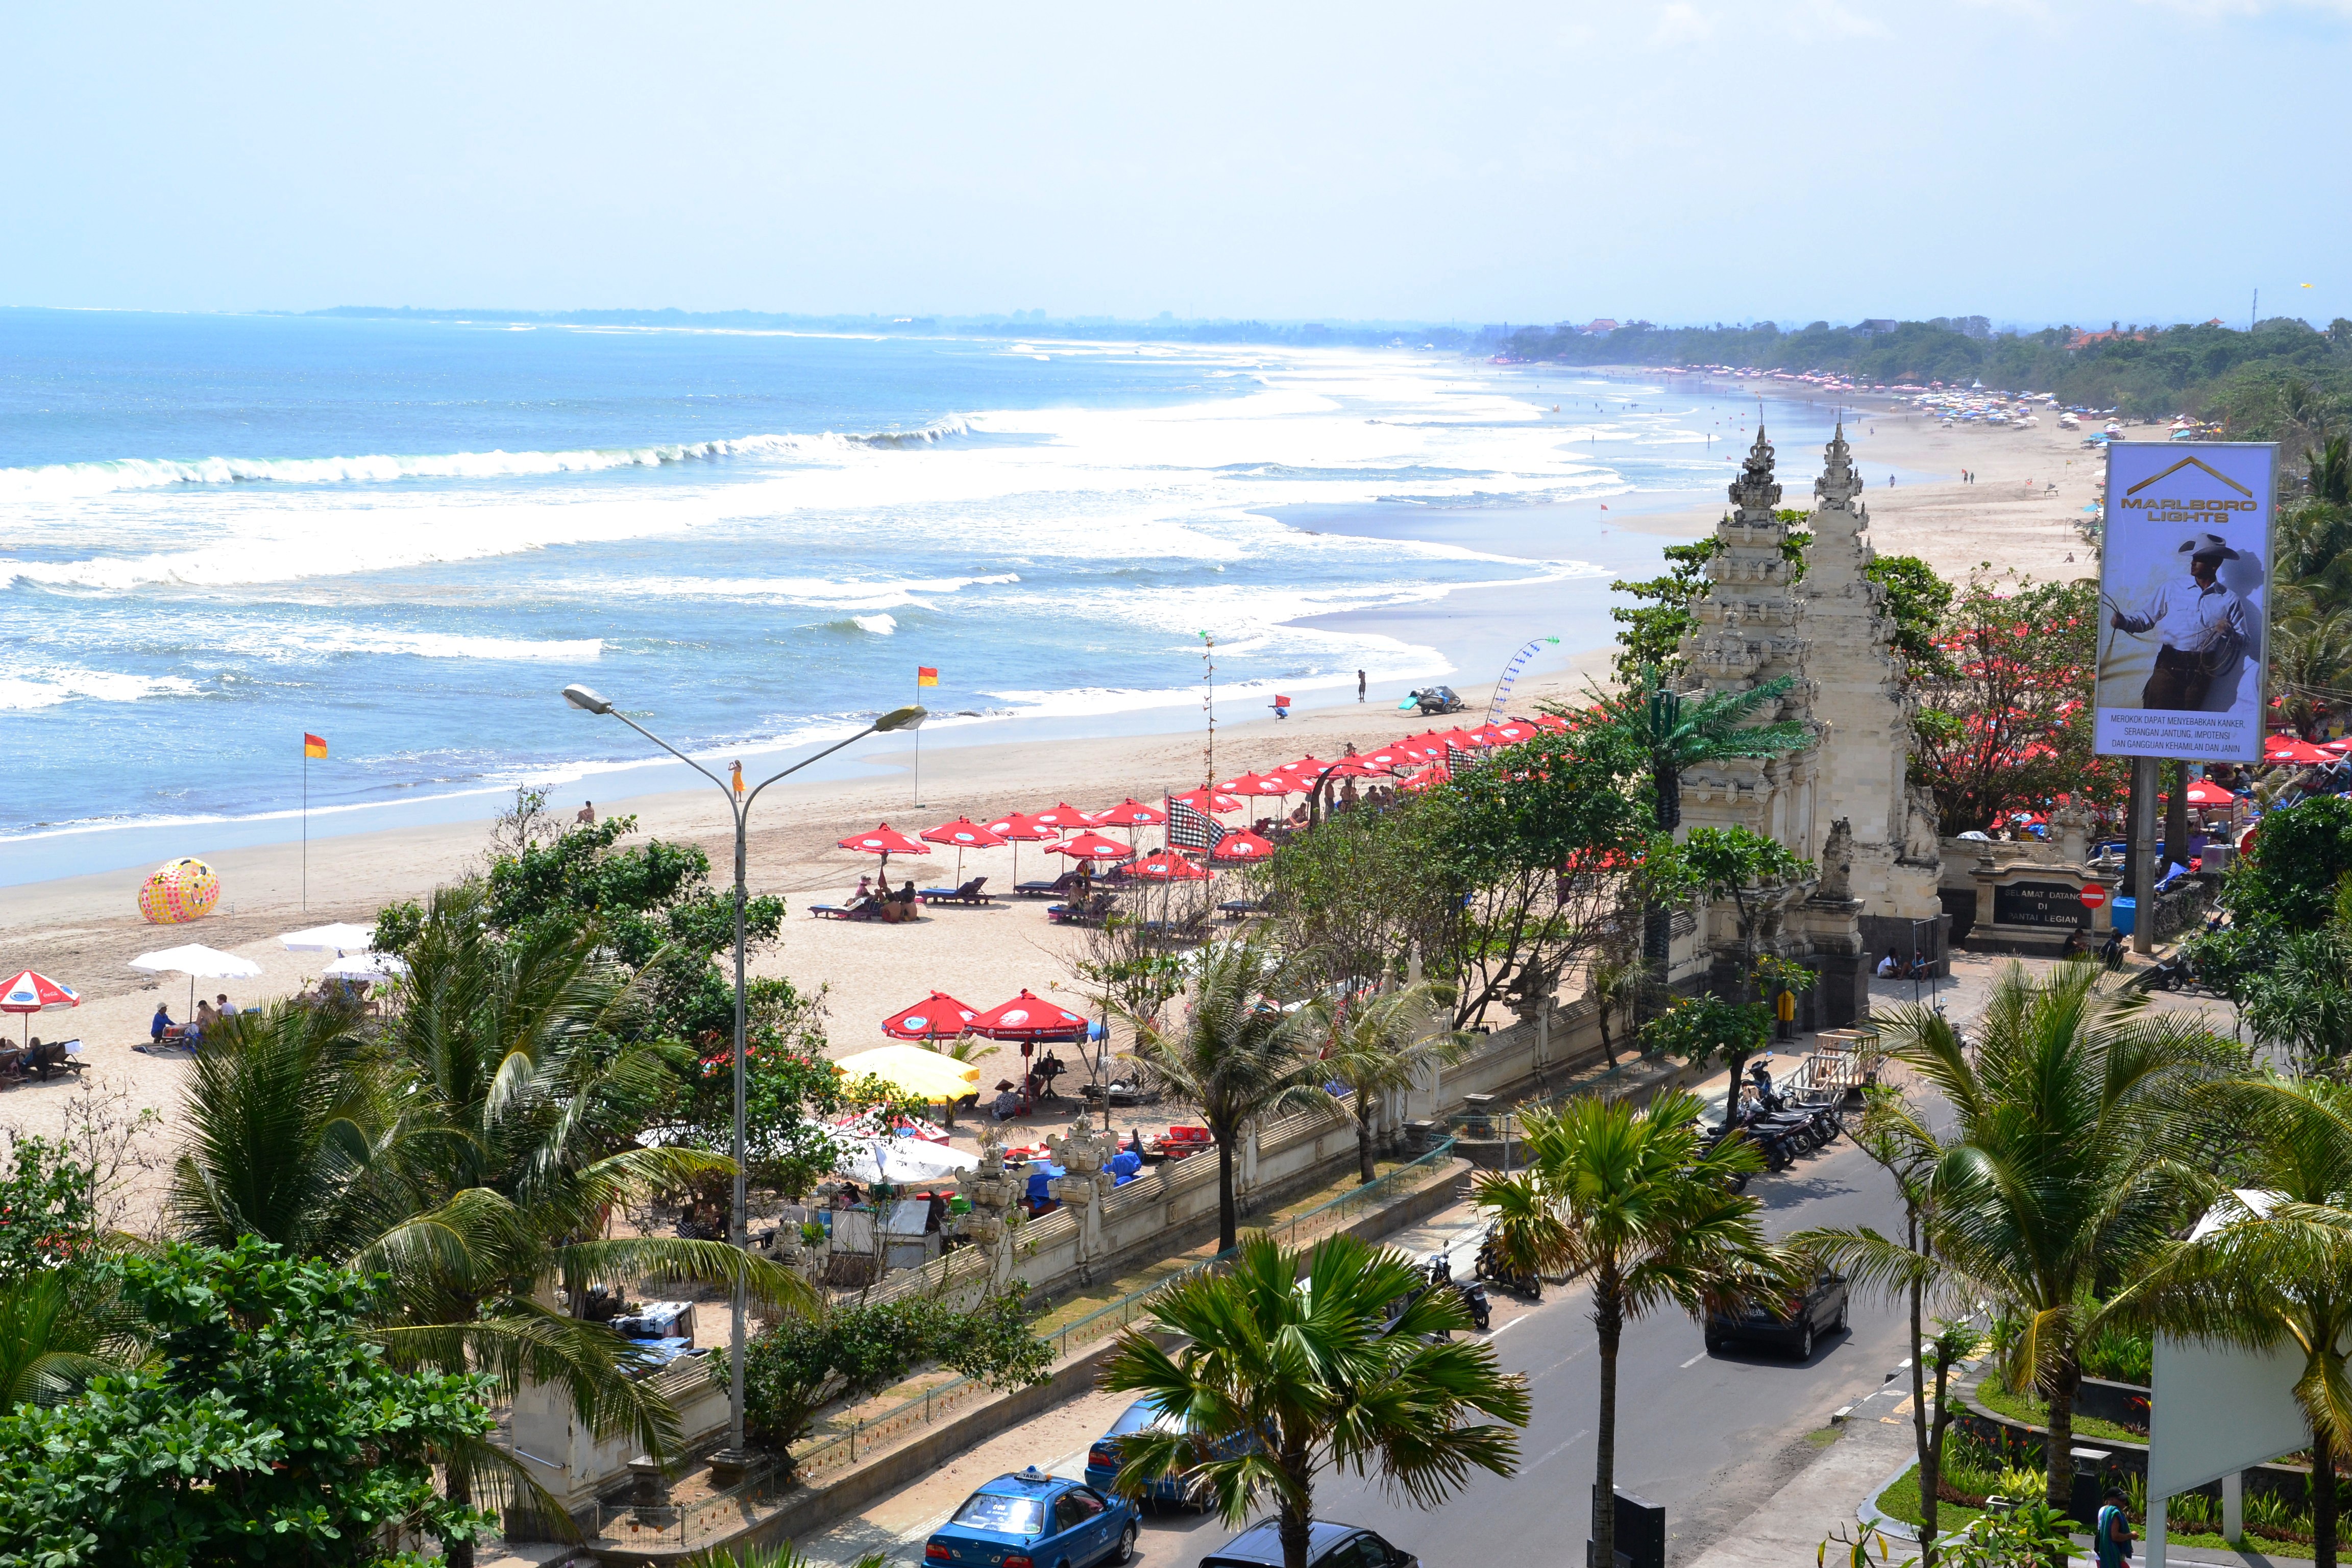 Khu vực bãi biển là nơi tập trung rất nhiều nhà nghỉ, khách sạn